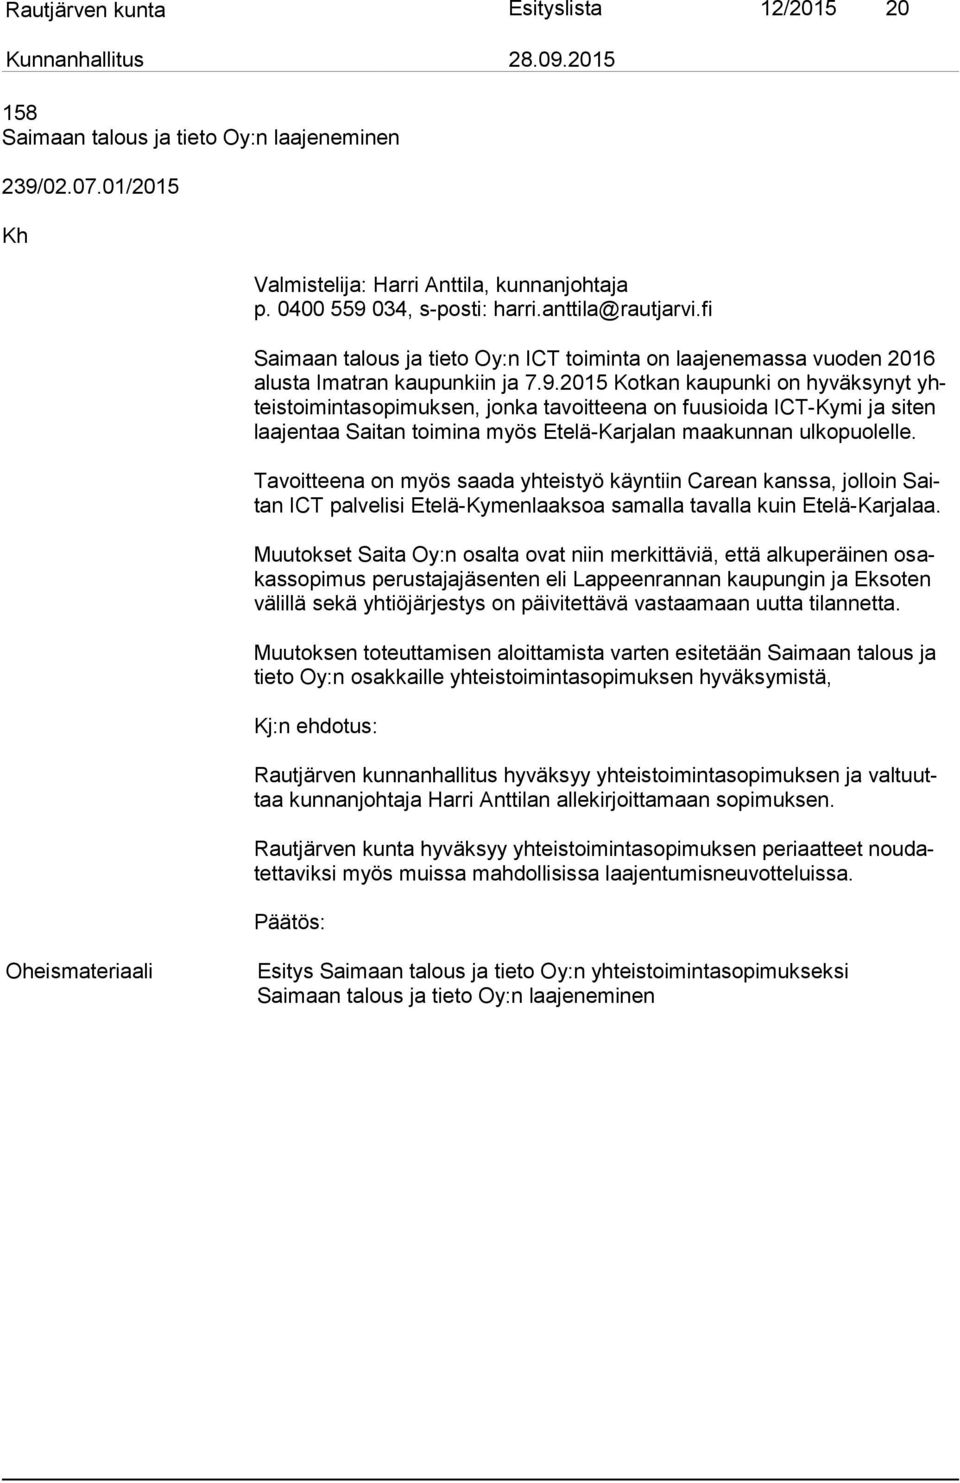 2015 Kotkan kaupunki on hyväksynyt yhteis toi min ta so pi muk sen, jonka tavoitteena on fuusioida ICT-Kymi ja siten laa jen taa Saitan toimina myös Etelä-Karjalan maakunnan ulkopuolelle.